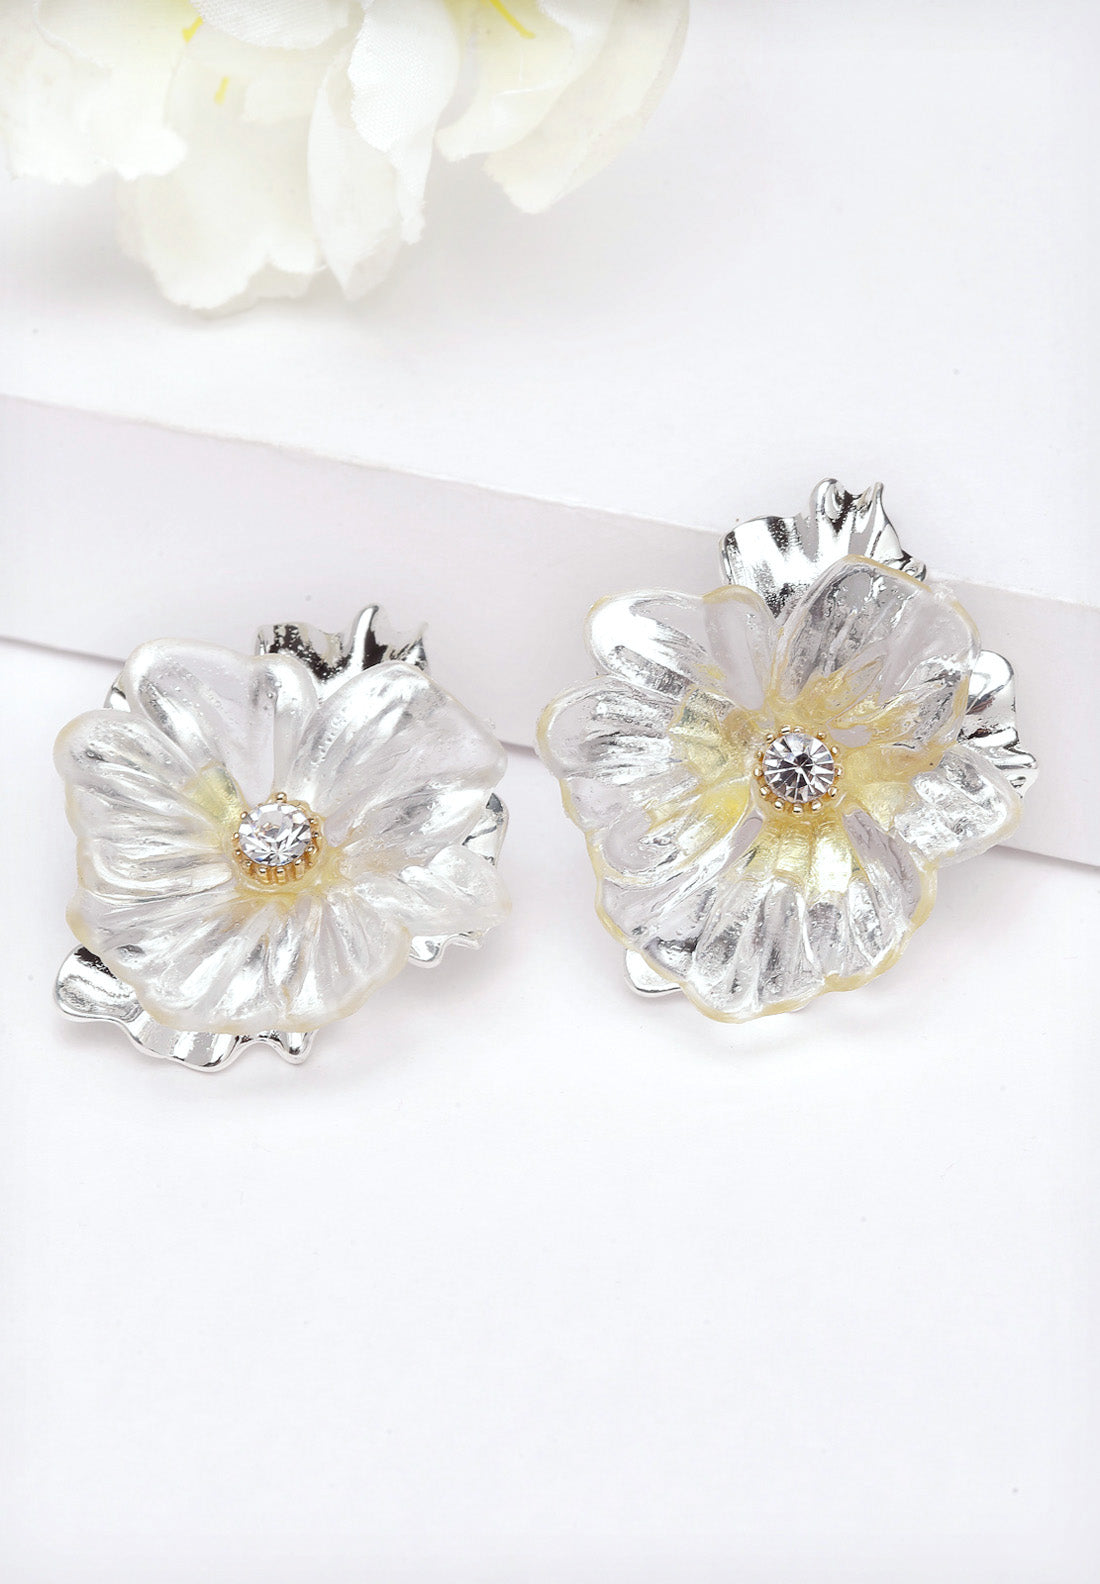 Kolczyki sztyfty ze srebrnymi kwiatami i kryształkami